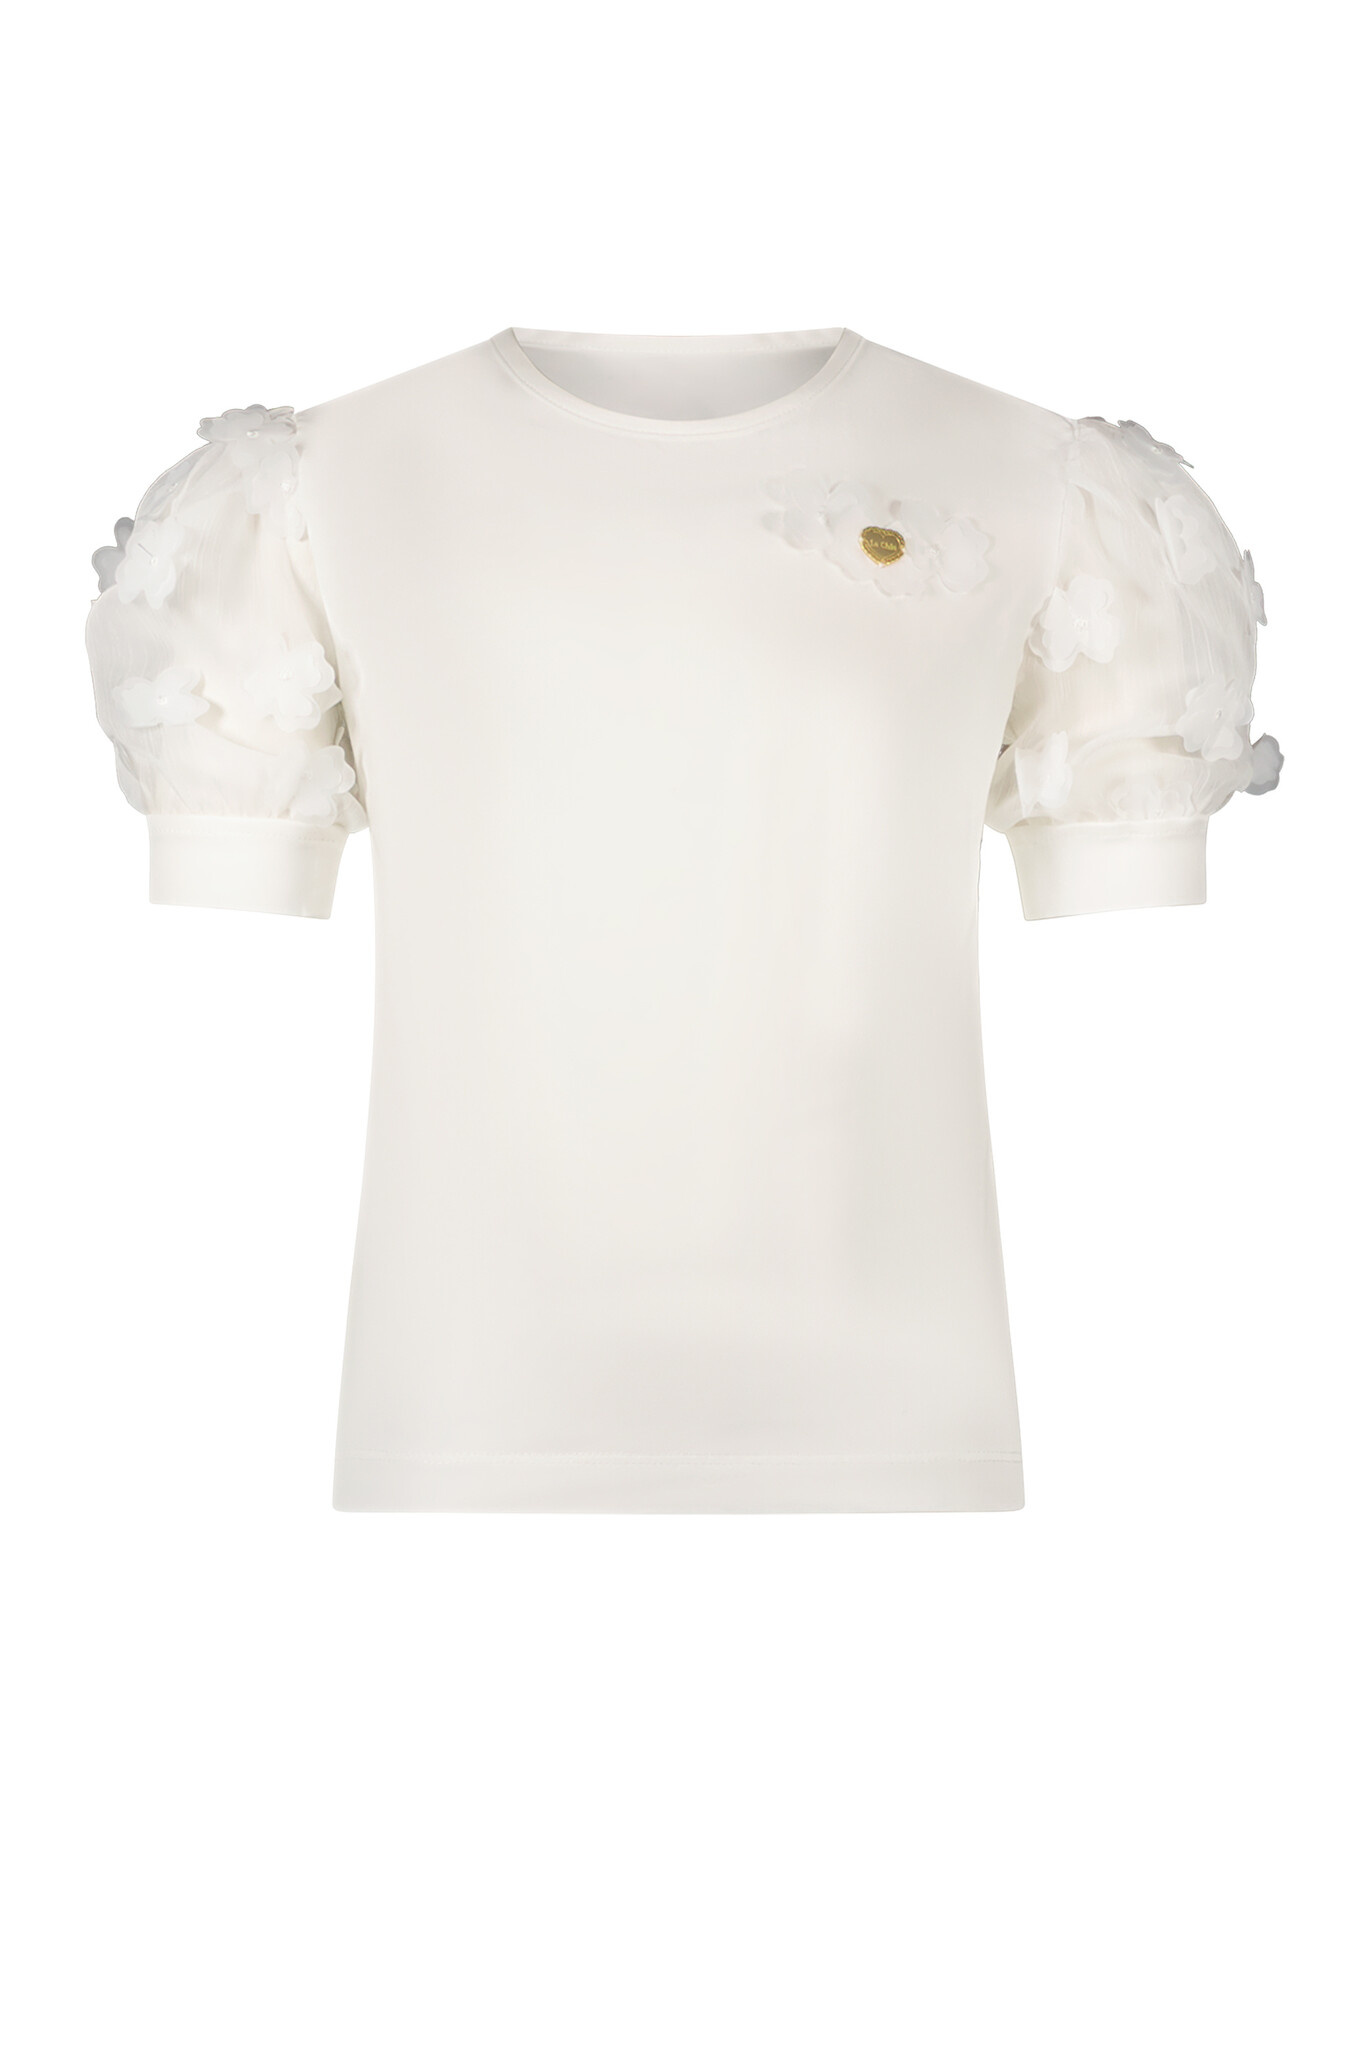 Le Chic C312-5400 Meisjes T-shirt - Off White - Maat 116